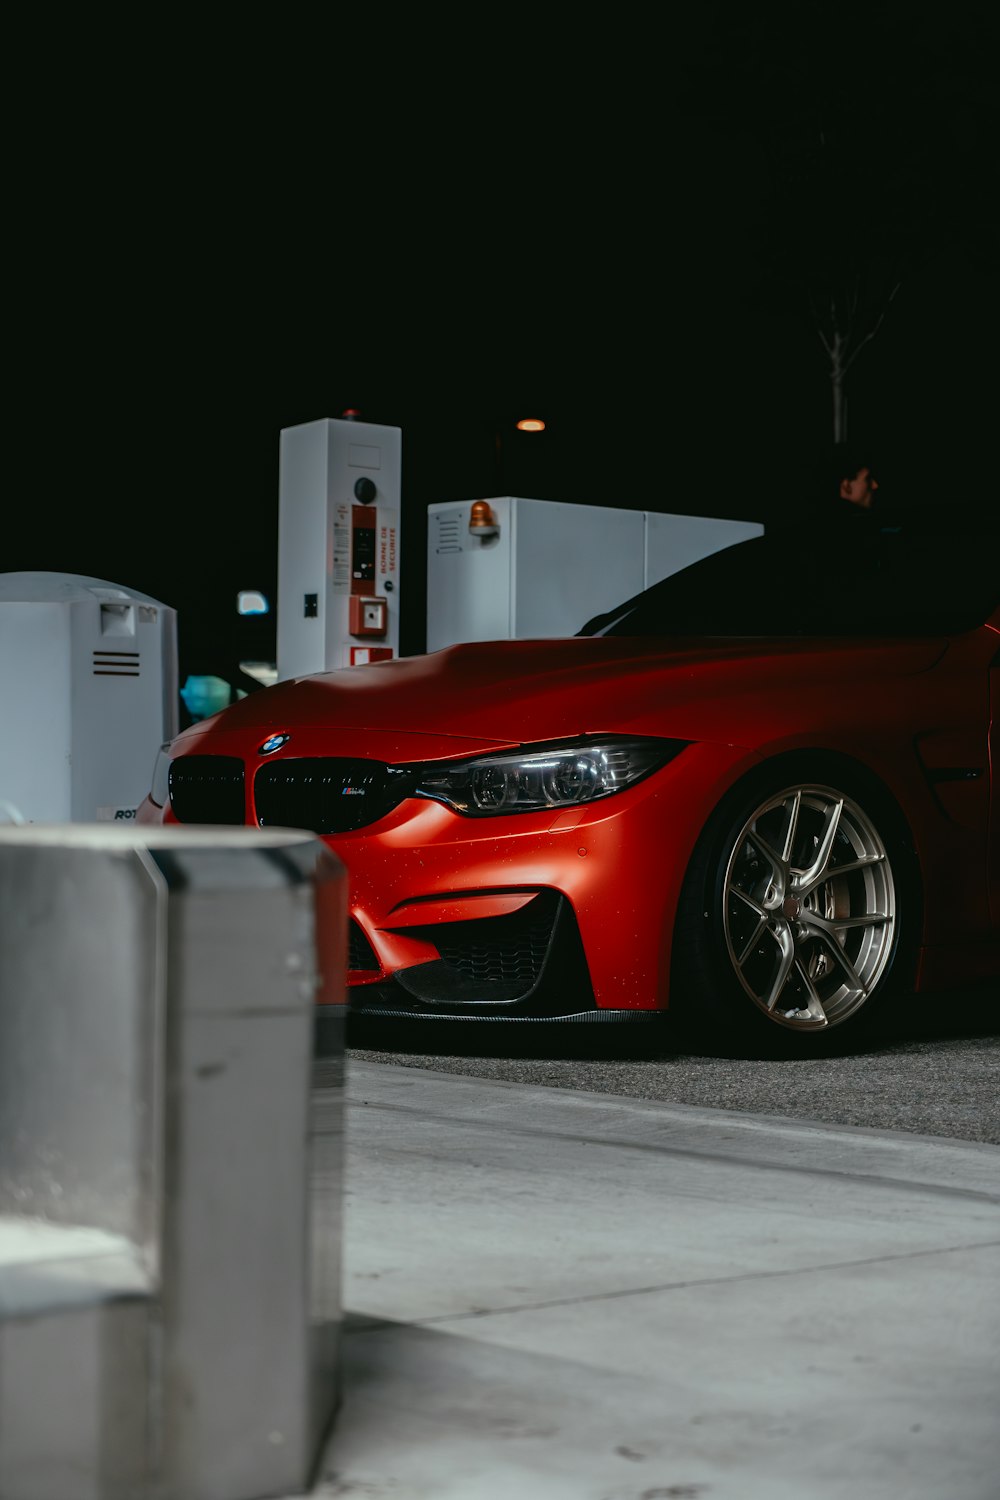 ガソリンスタンドの前に停められた赤い車